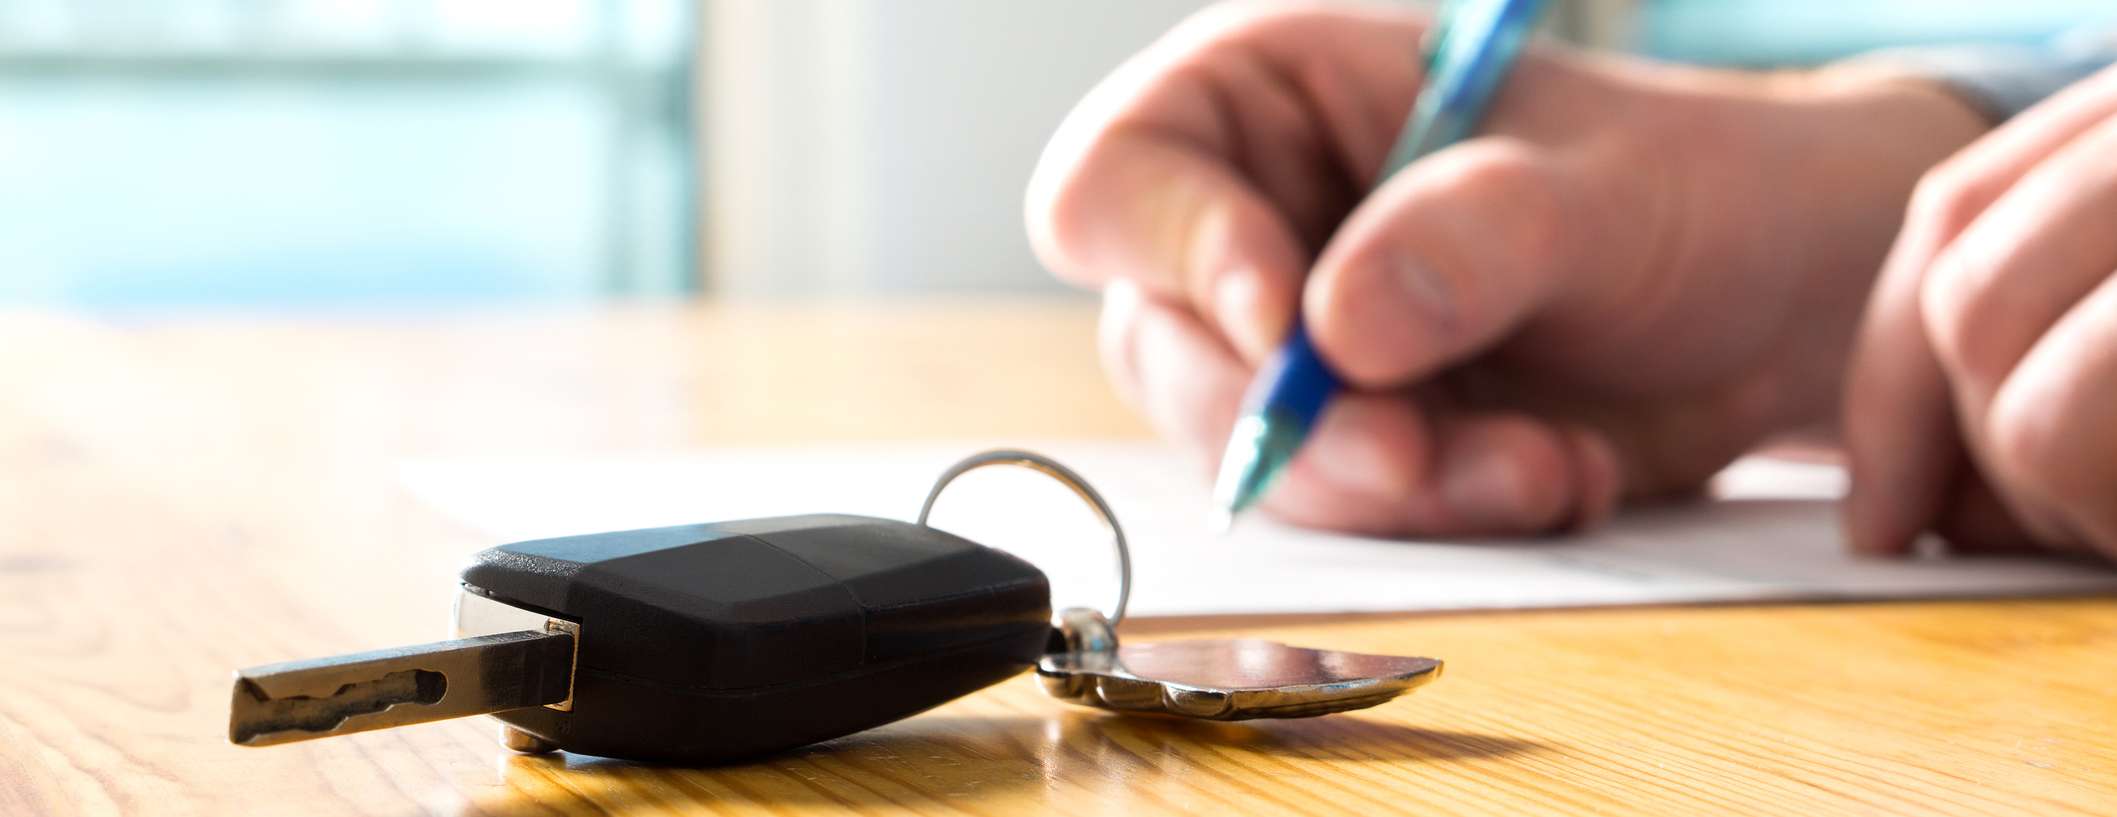 Autoschlüssel liegt auf Holztisch, während Person Vertrag unterschreibt